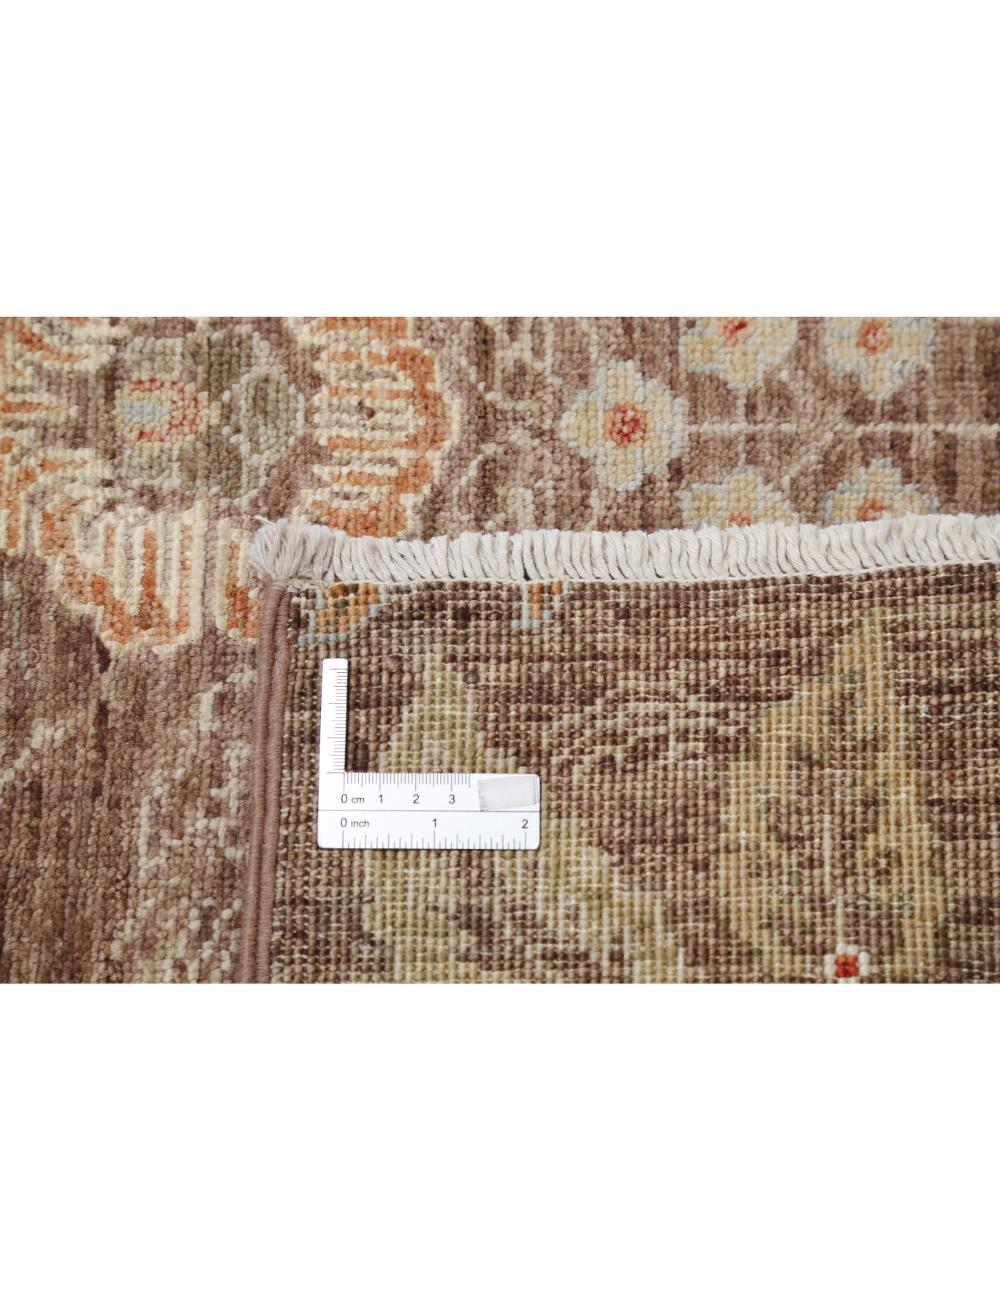 Hand Knotted Artemix Wool & Silk Rug - 2'11'' x 9'7'' Arteverk Arteverk Rugs